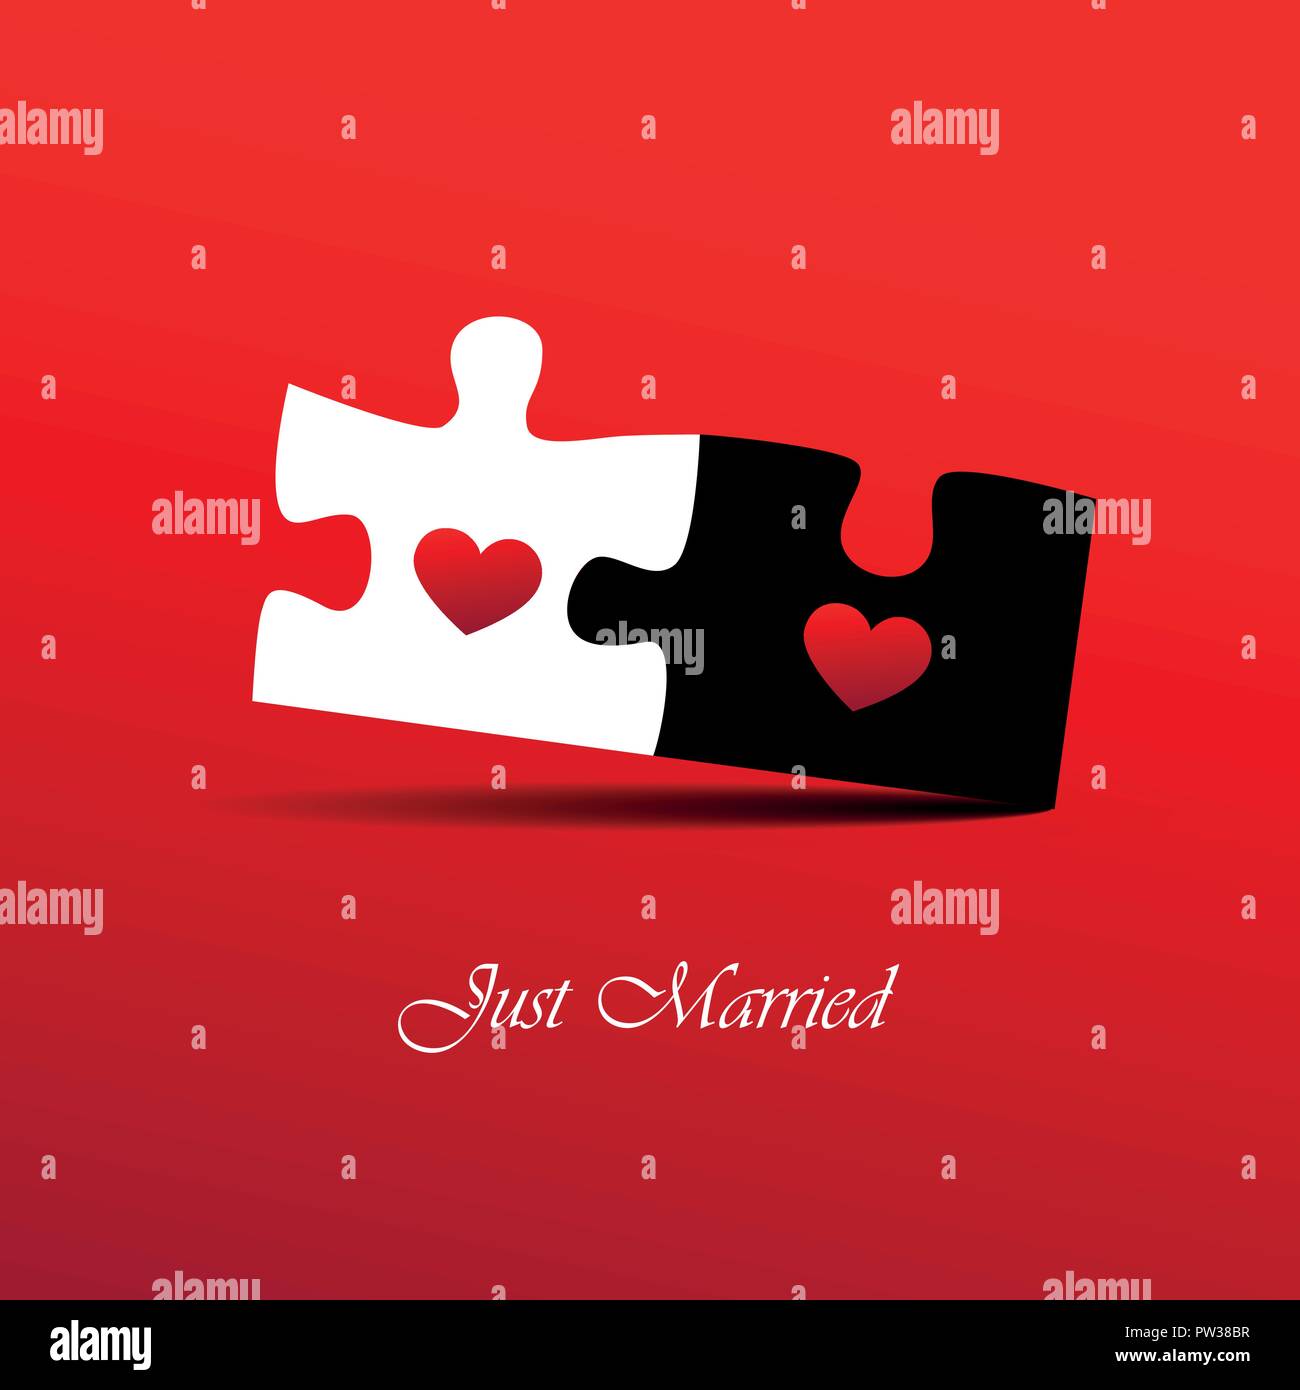 Just Married rot Einladung Karte für Hochzeit mit puzzle Vektor-illustration EPS 10. Stock Vektor